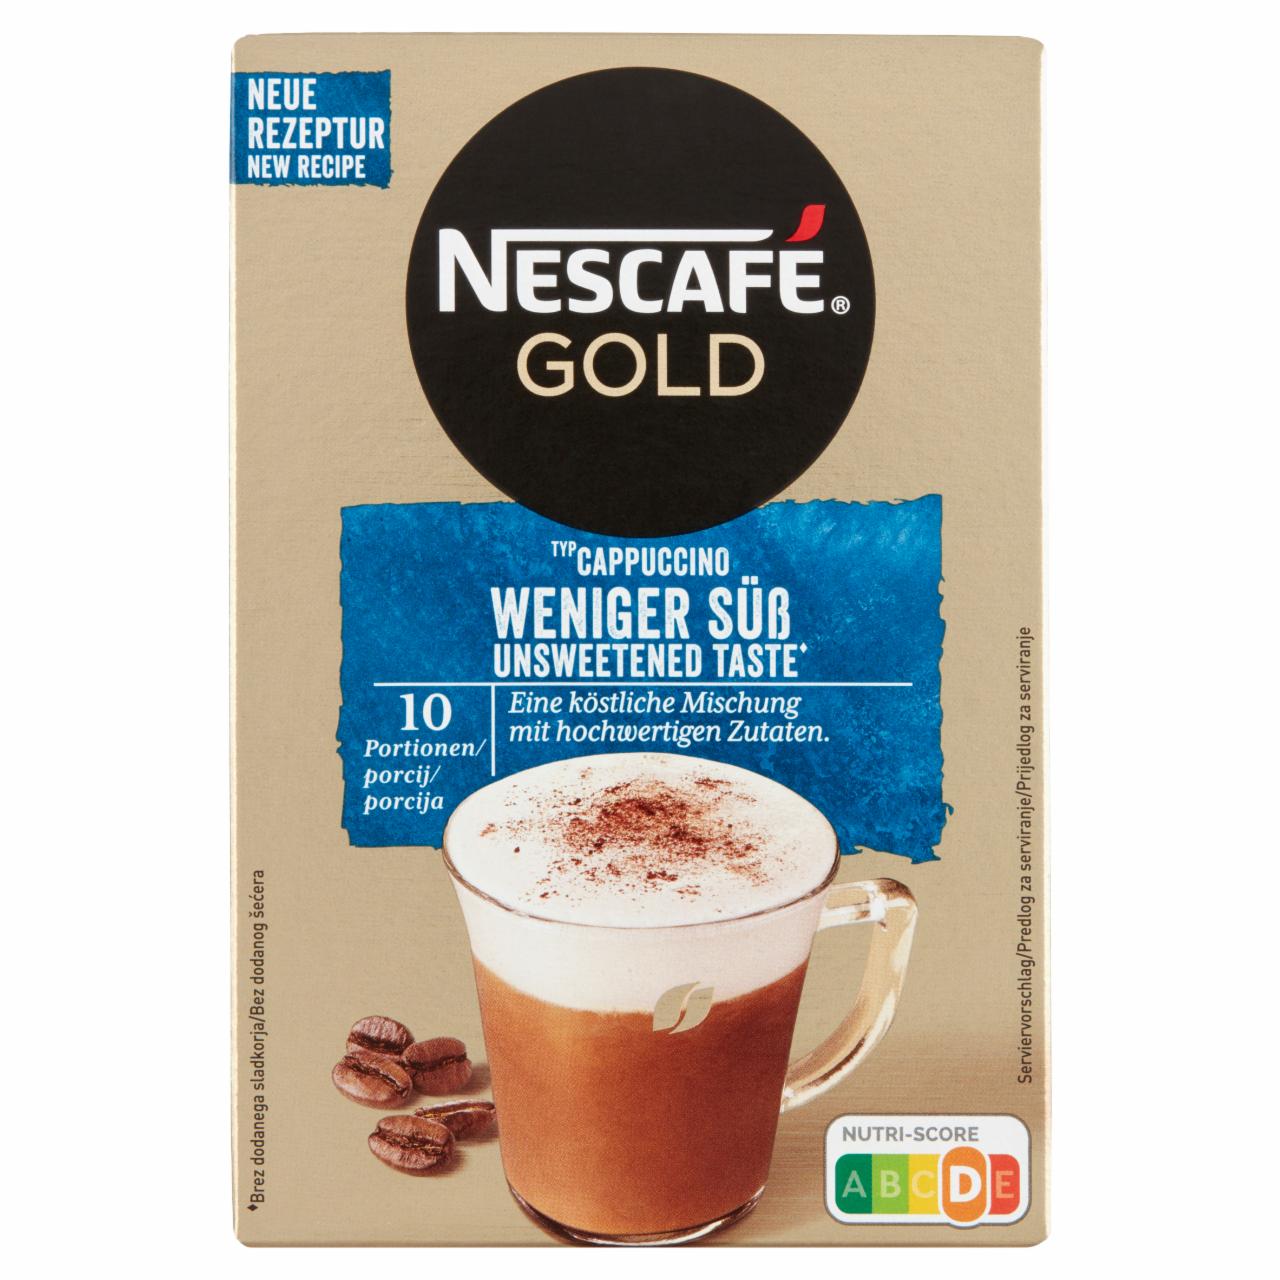 Képek - Nescafé Gold Cappuccino azonnal oldódó kávéspecialitás édes íz nélkül 10 x 12,5 g (125 g)